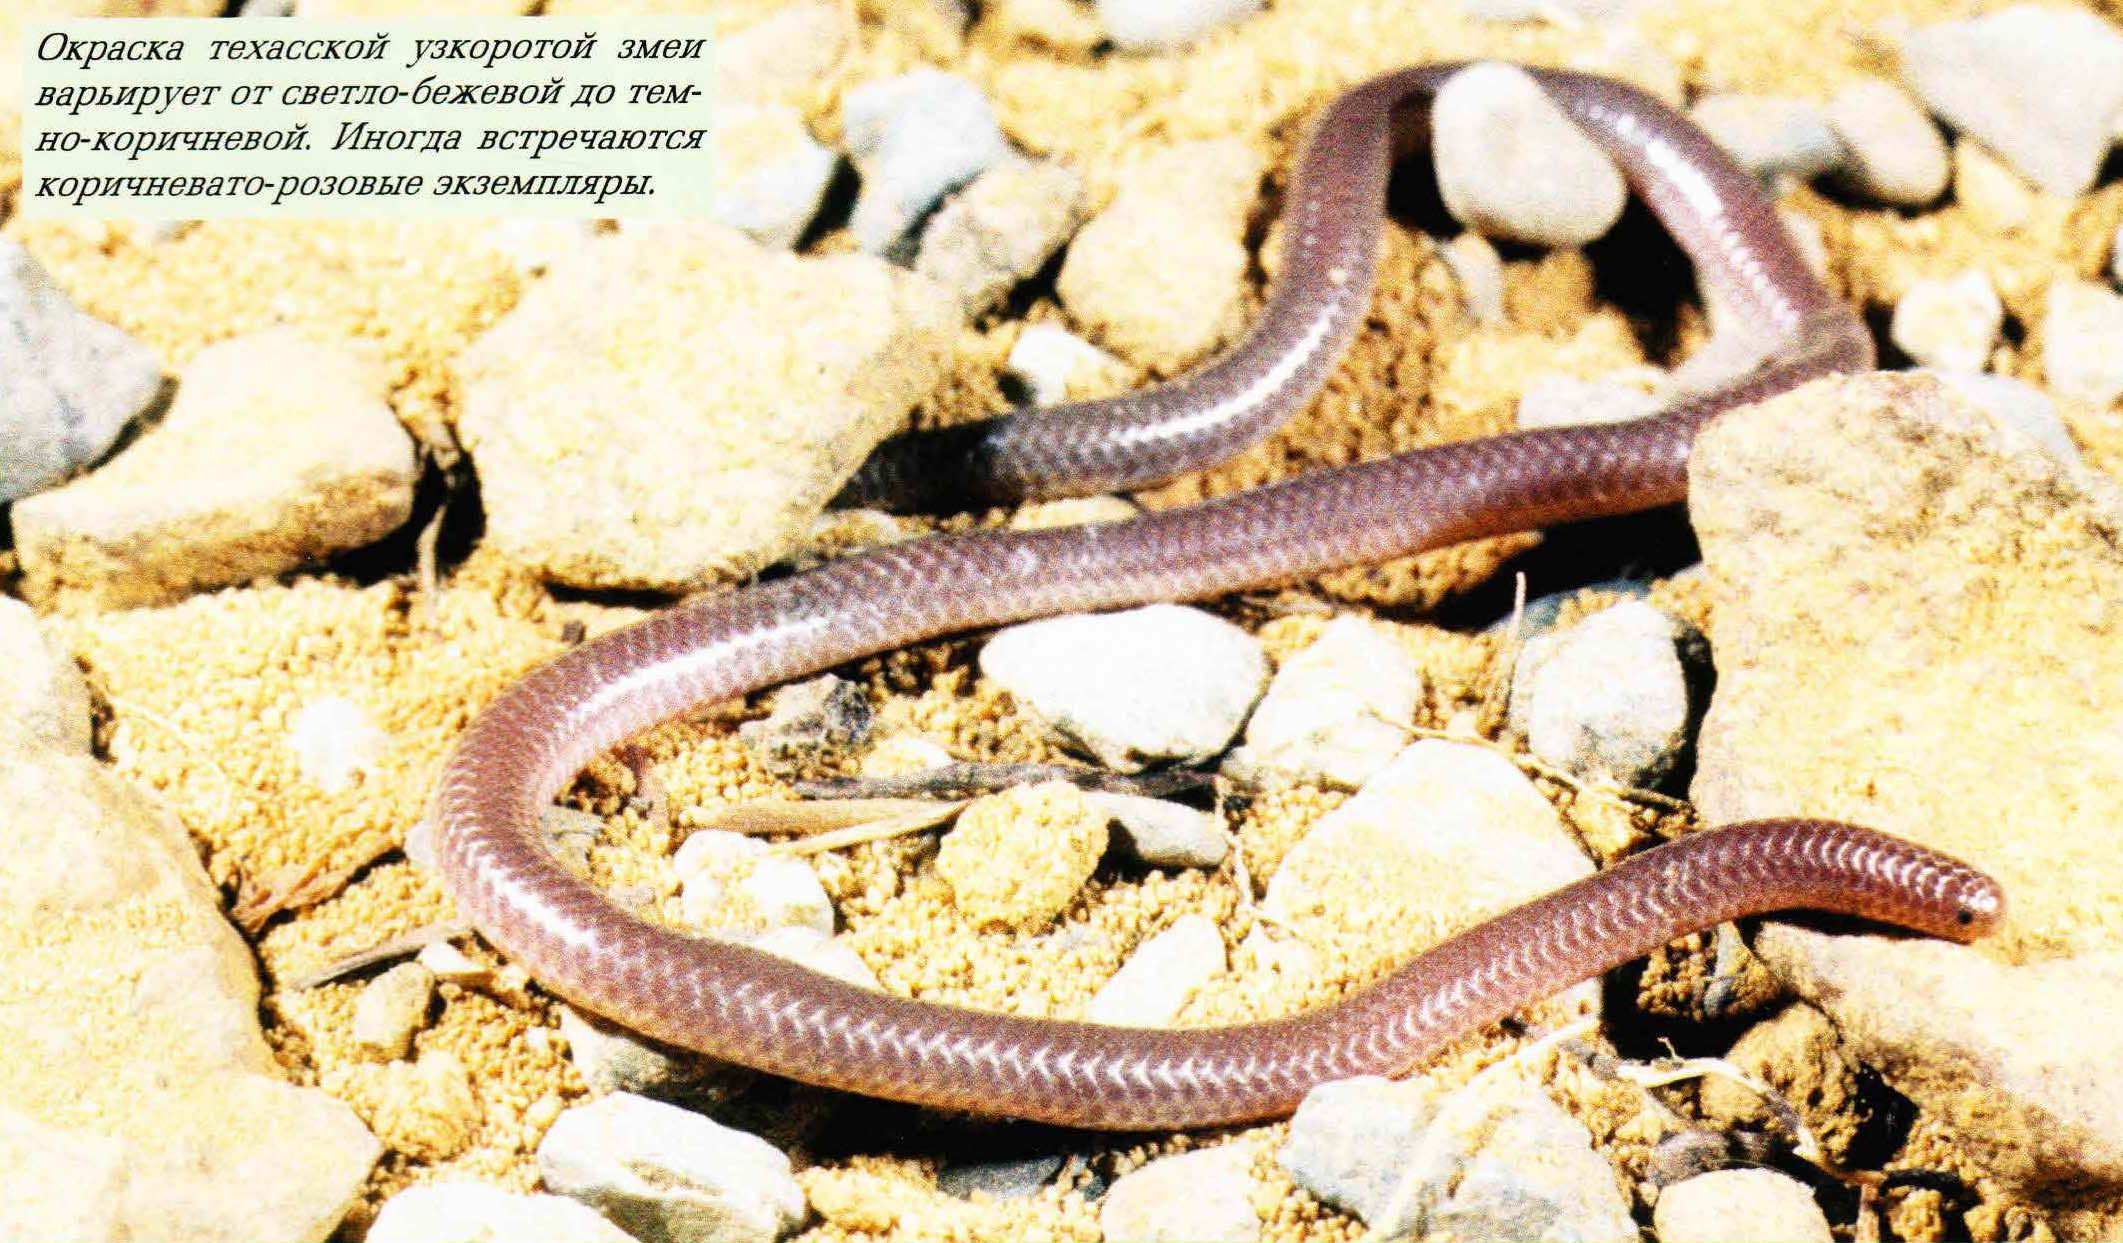 Окраска техасской узкоротой змеи варьирует от светло-бежевой до темно-коричневой. Иногда встречаются коричневато-розовые экземпляры.